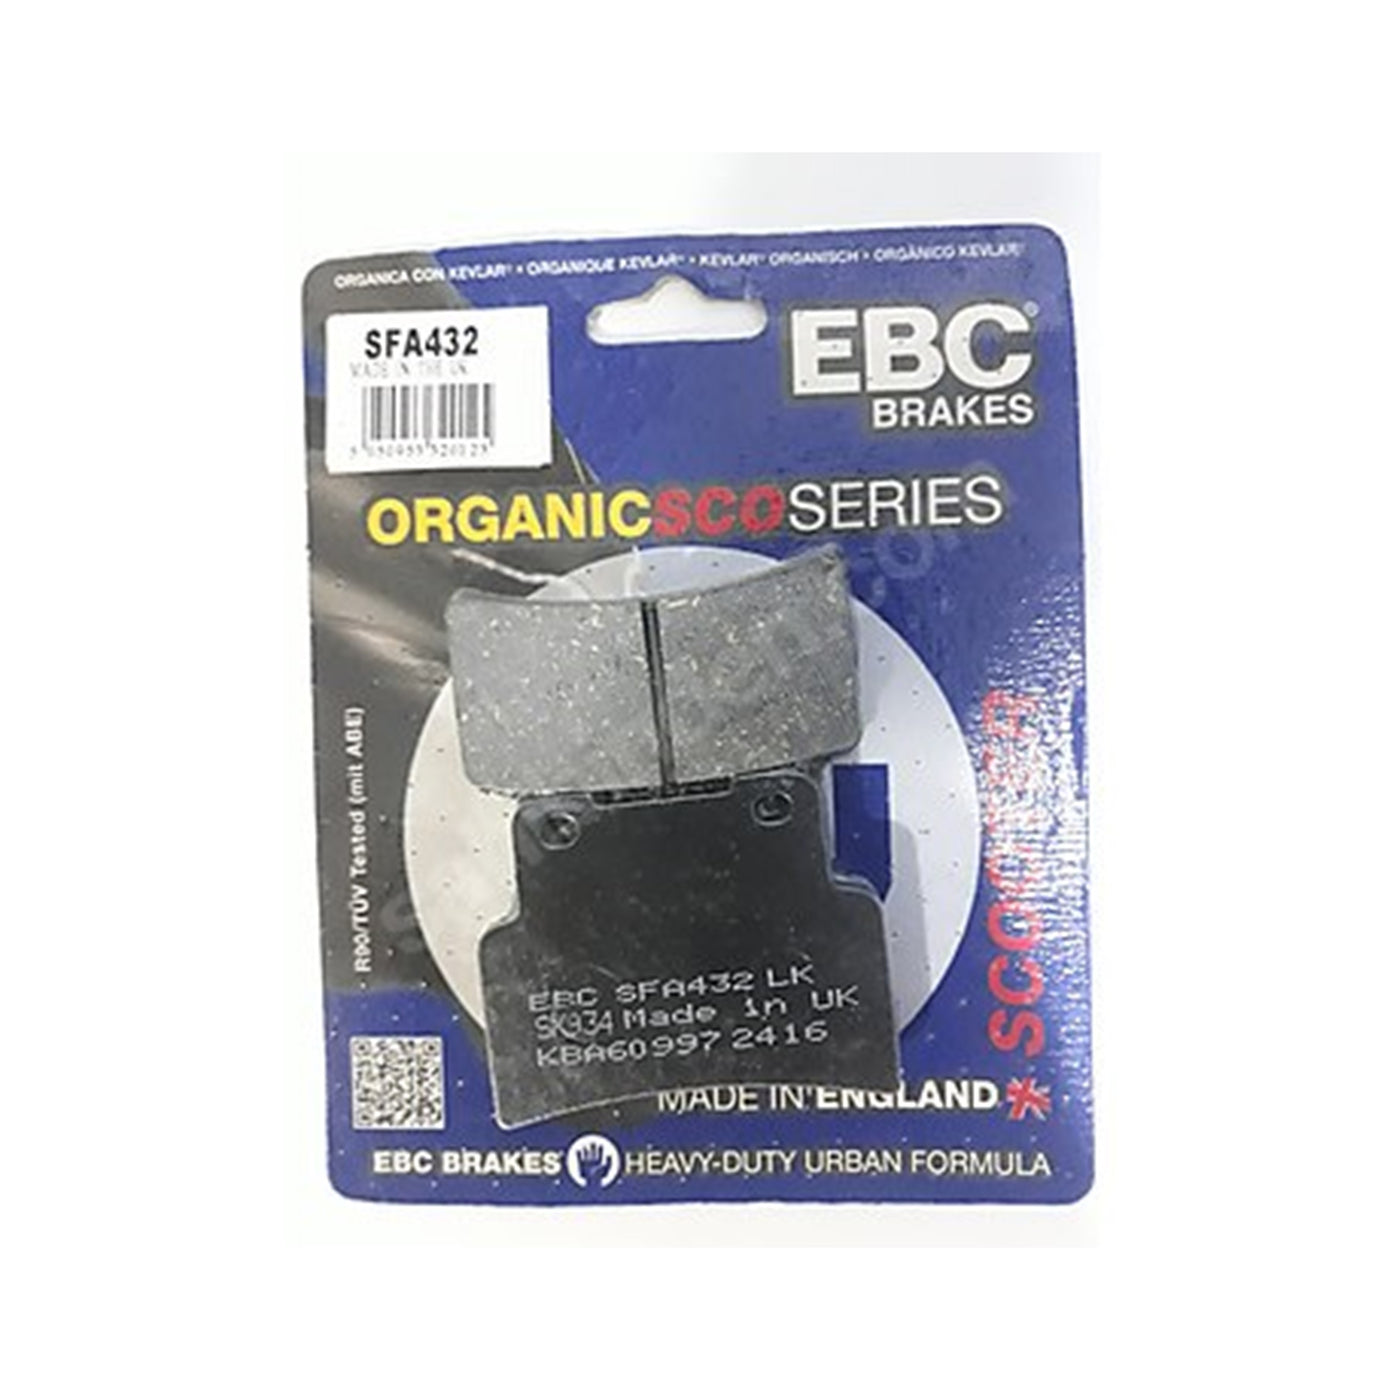 EBC Brakes SFA432 Scooter Organic Brake Pad Set